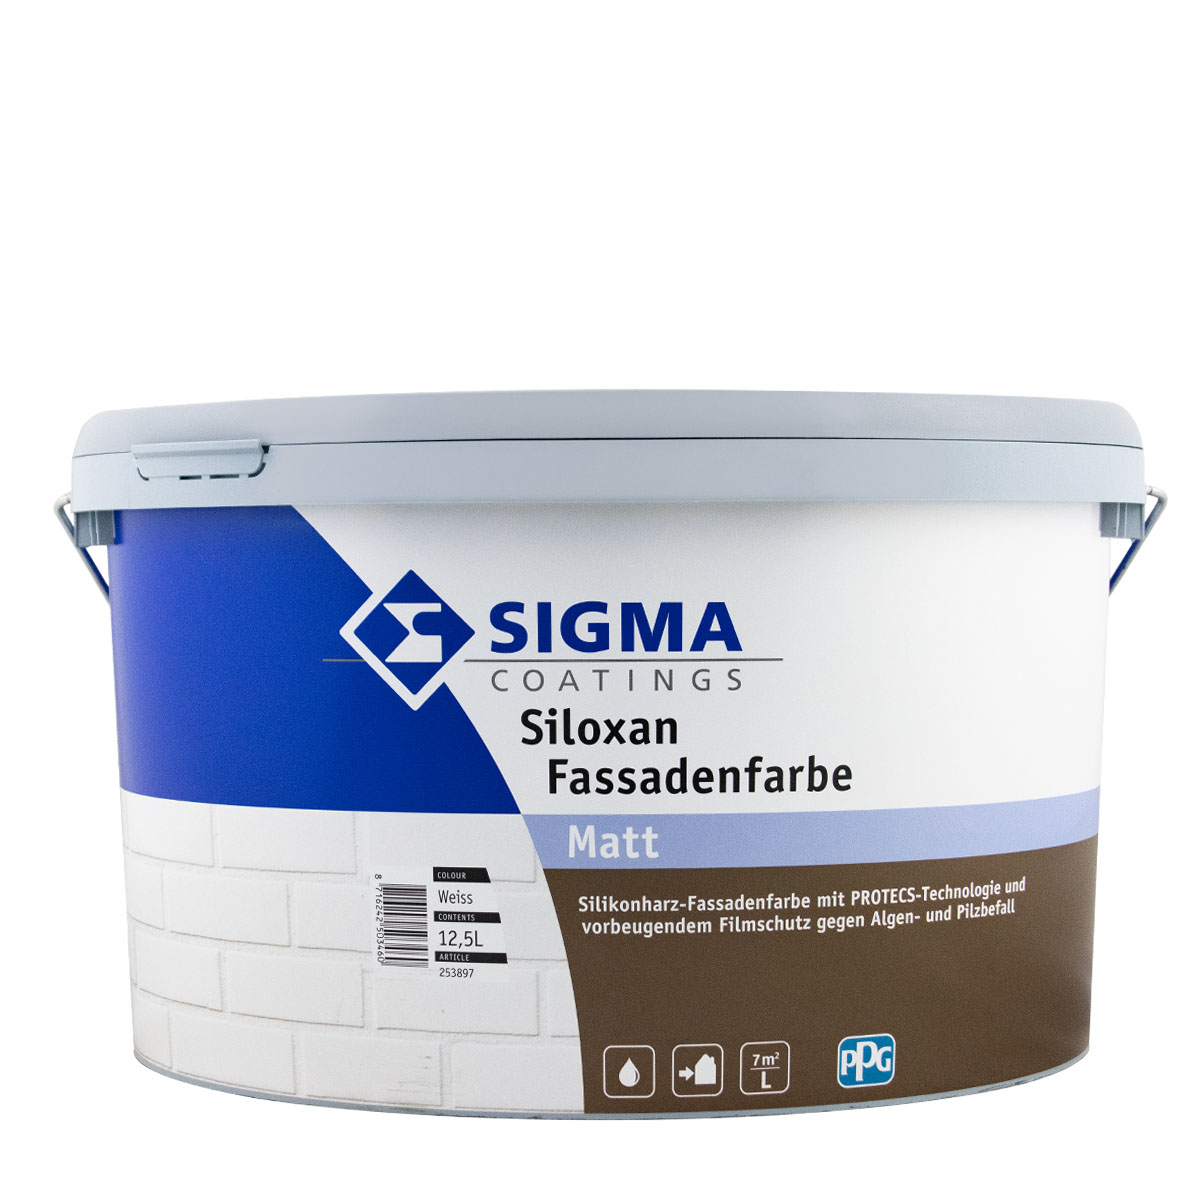 Sigma Siloxan Fassadenfarbe A+F 12,5L weiss, Silikonharz